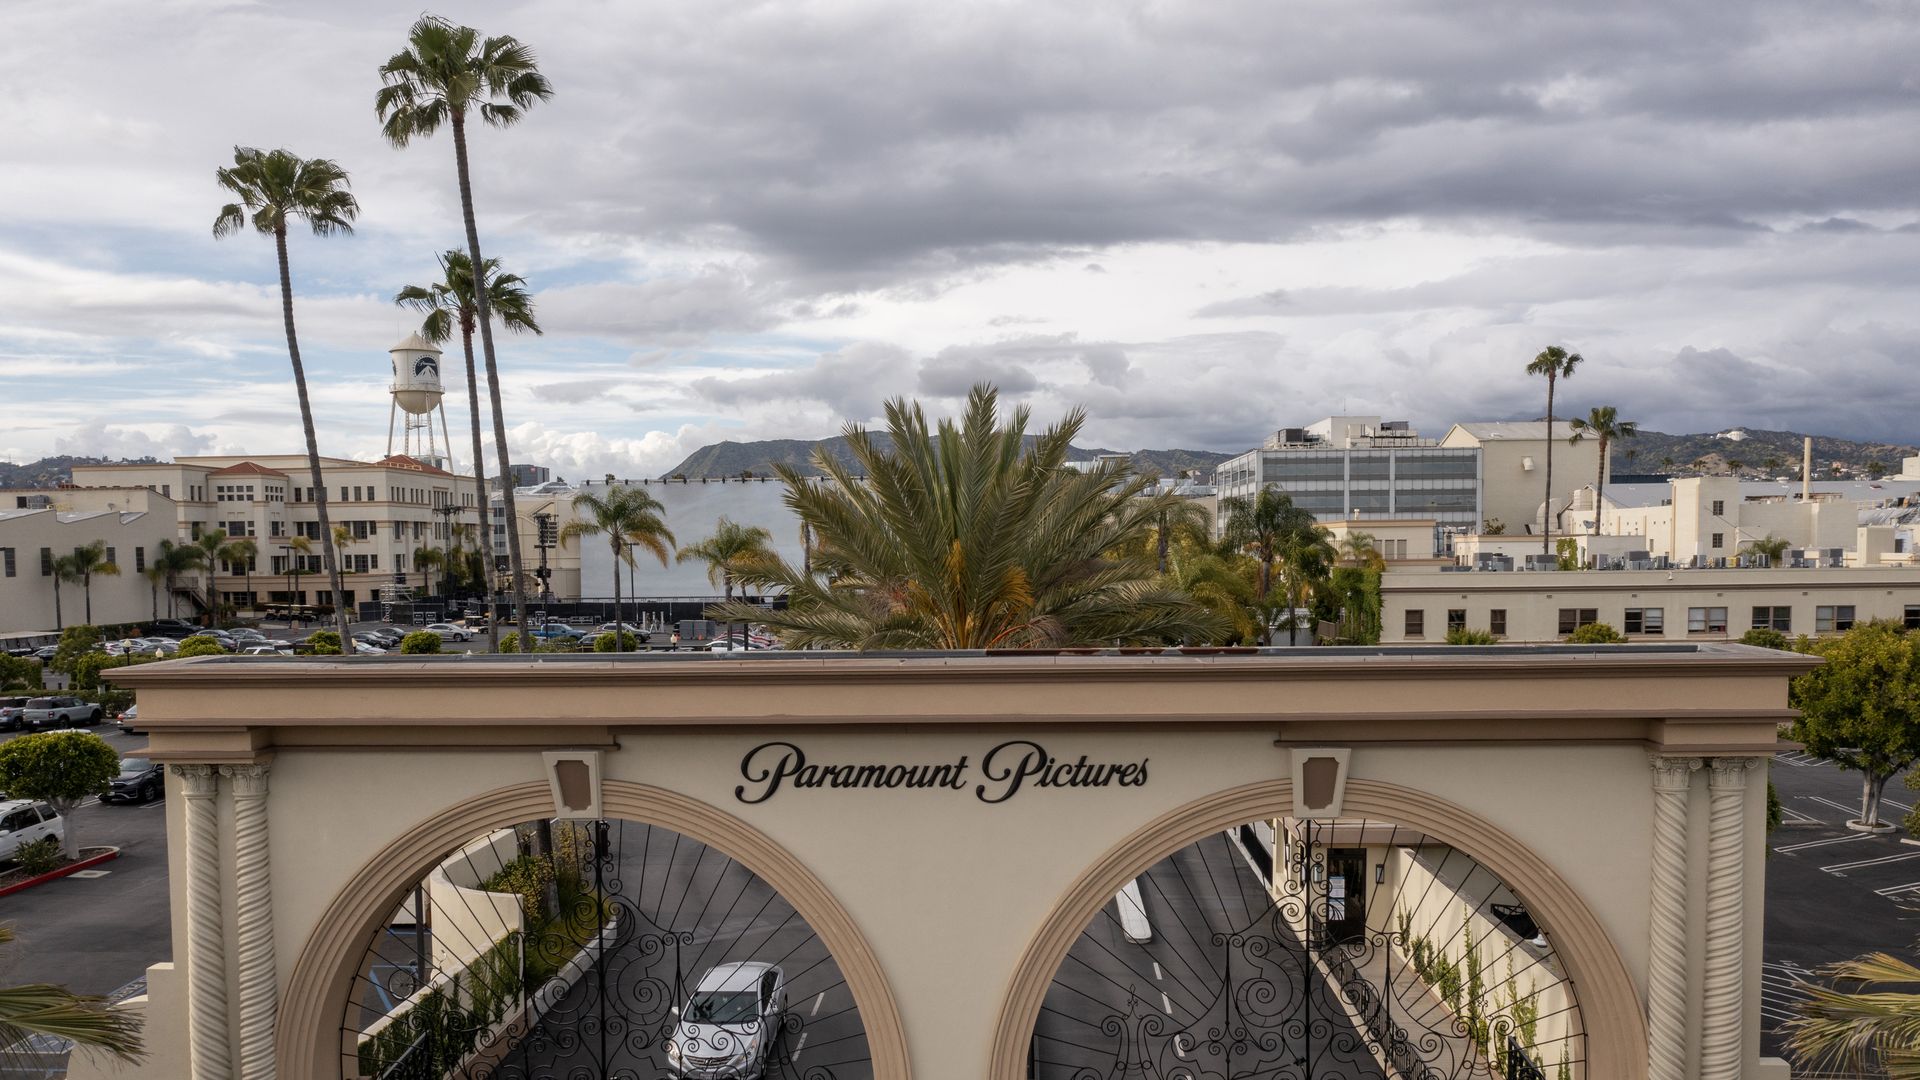 Paramount Studios arches